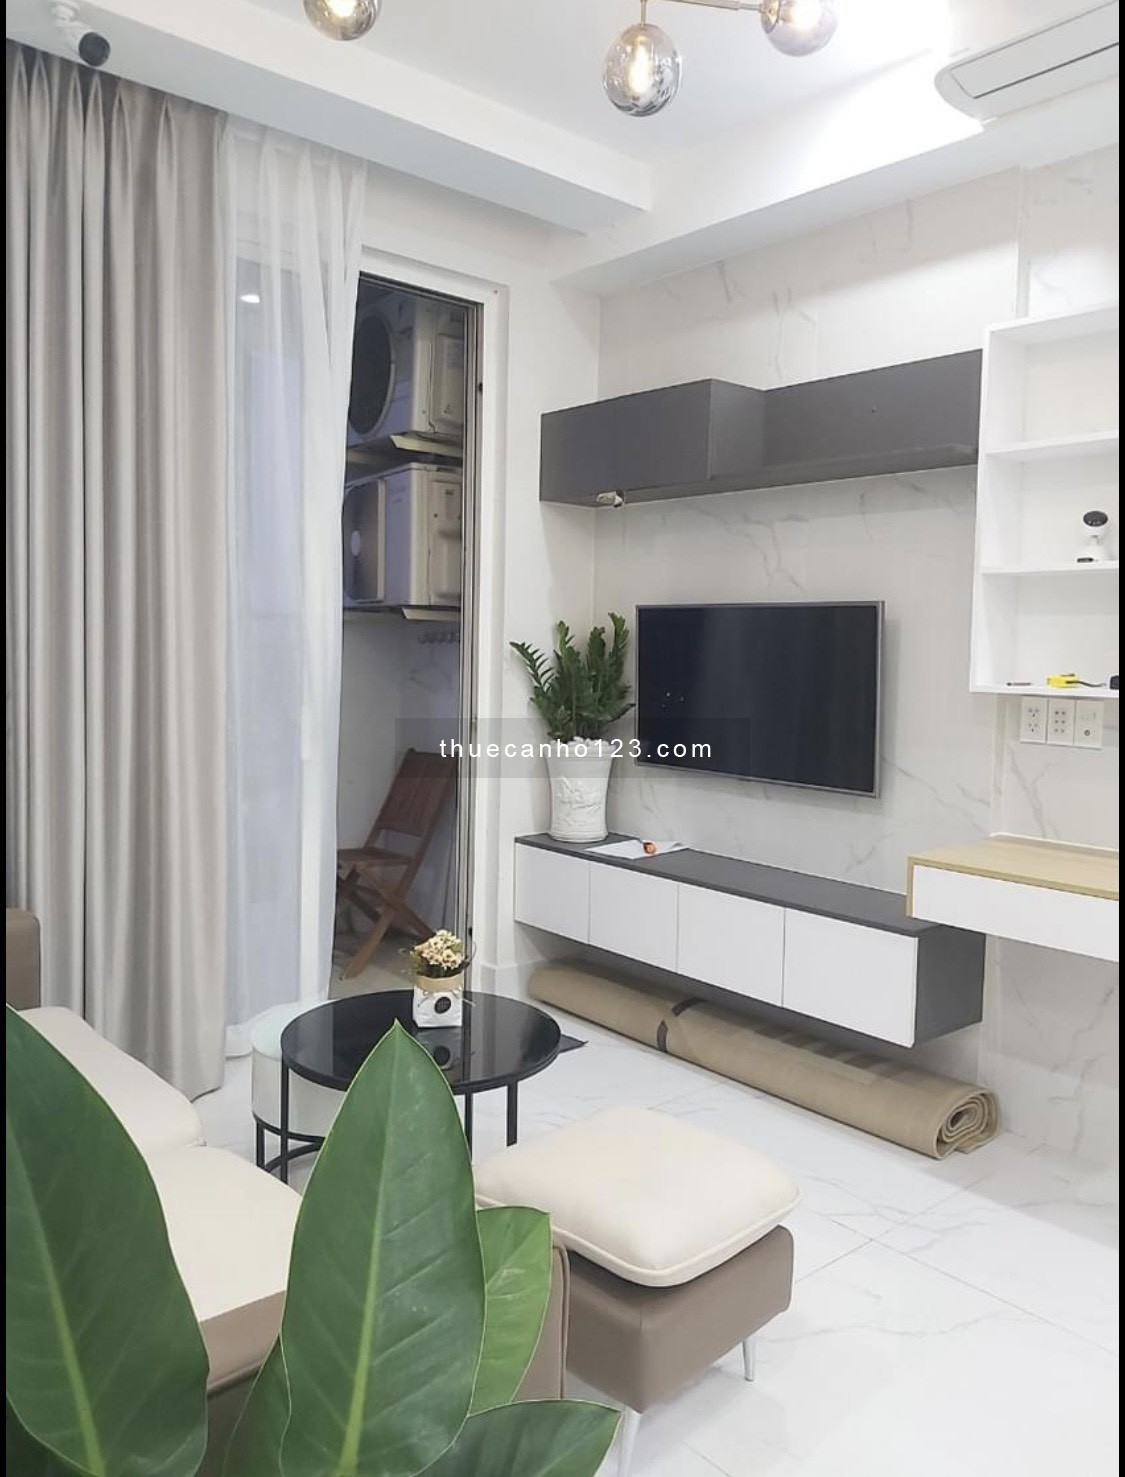 Cho thuê căn hộ Richstar Tân Phú khu 1, đầy đủ nội thất cao cấp, 2PN 2WC, 65m2, giá 11 triệu